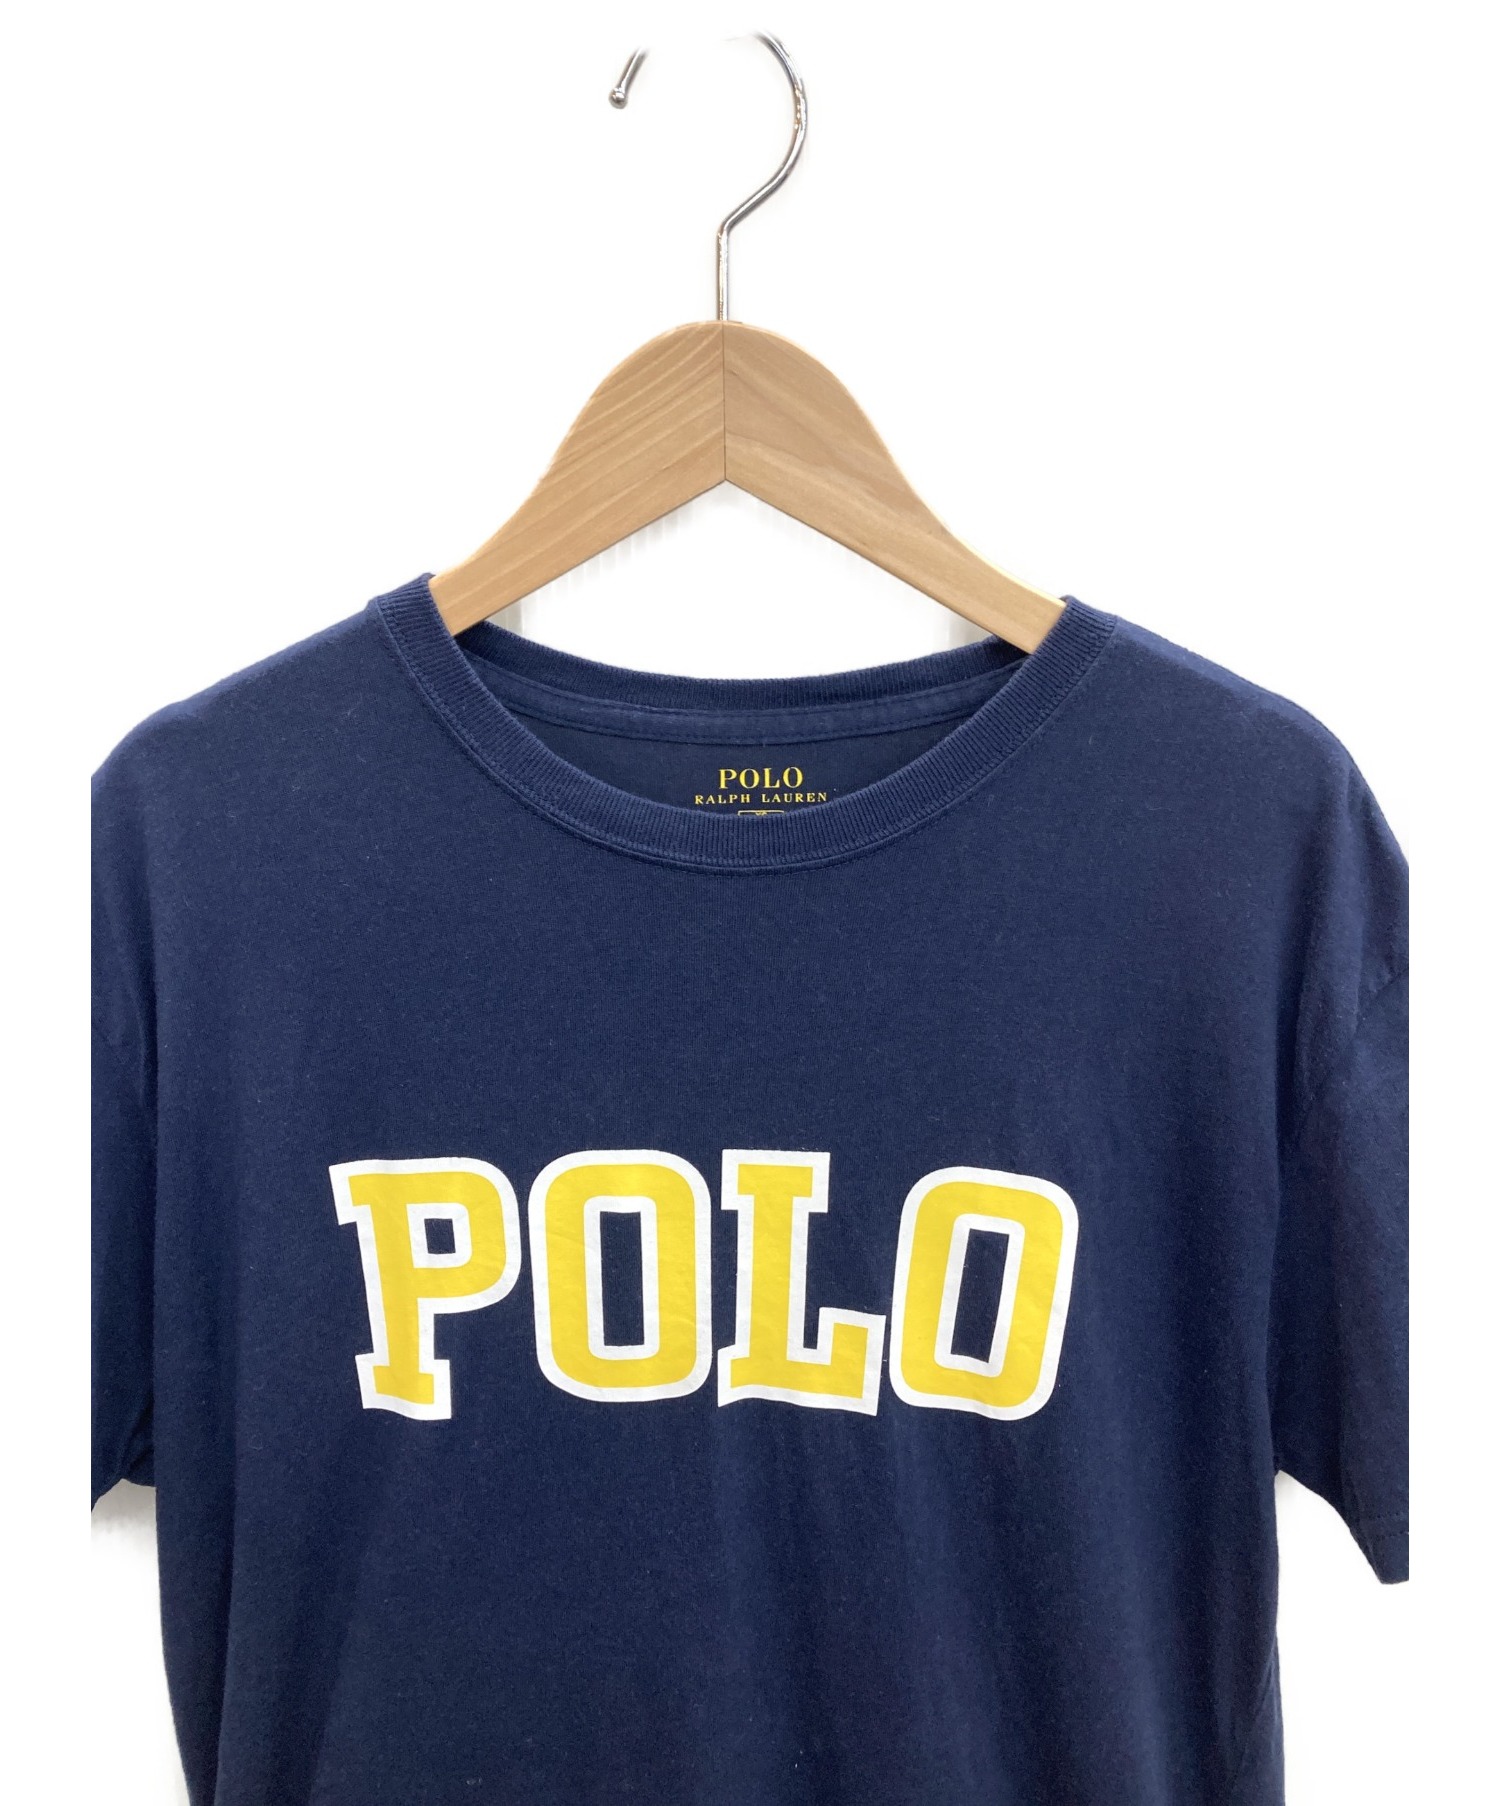 POLO RALPH LAUREN (ポロ・ラルフローレン) Tシャツ ネイビー サイズ:XS